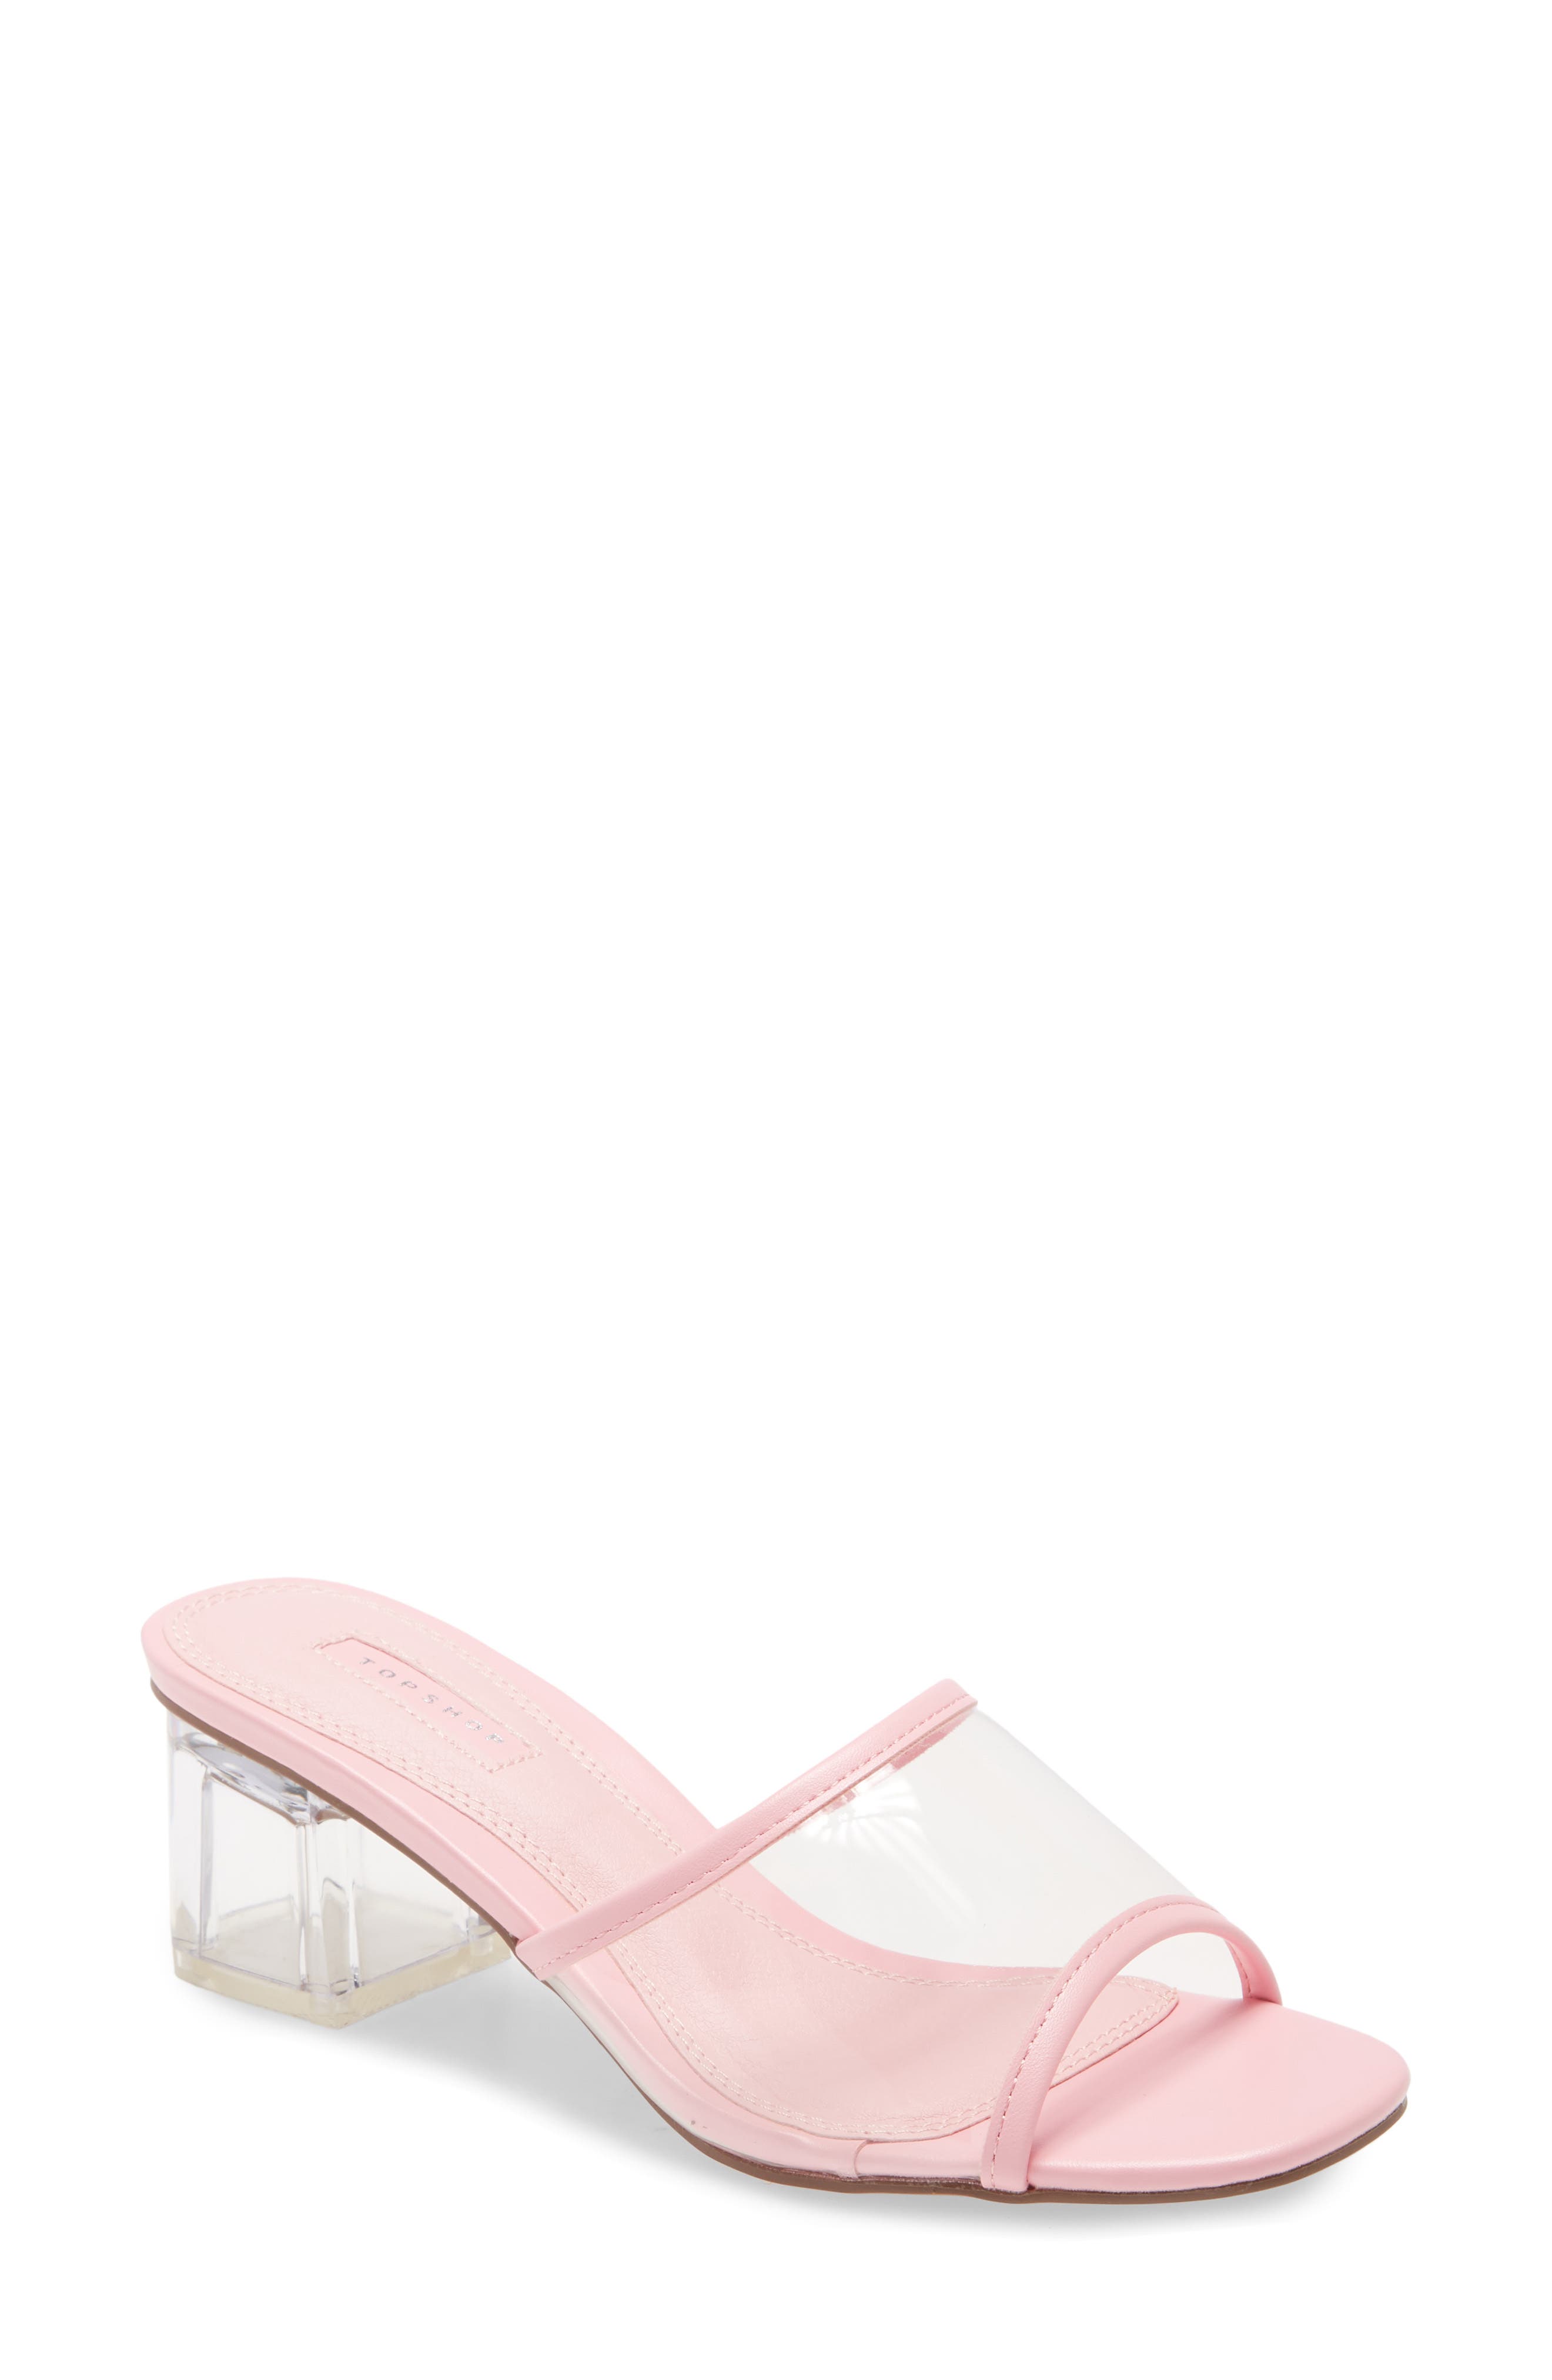 dusty pink block heel shoes